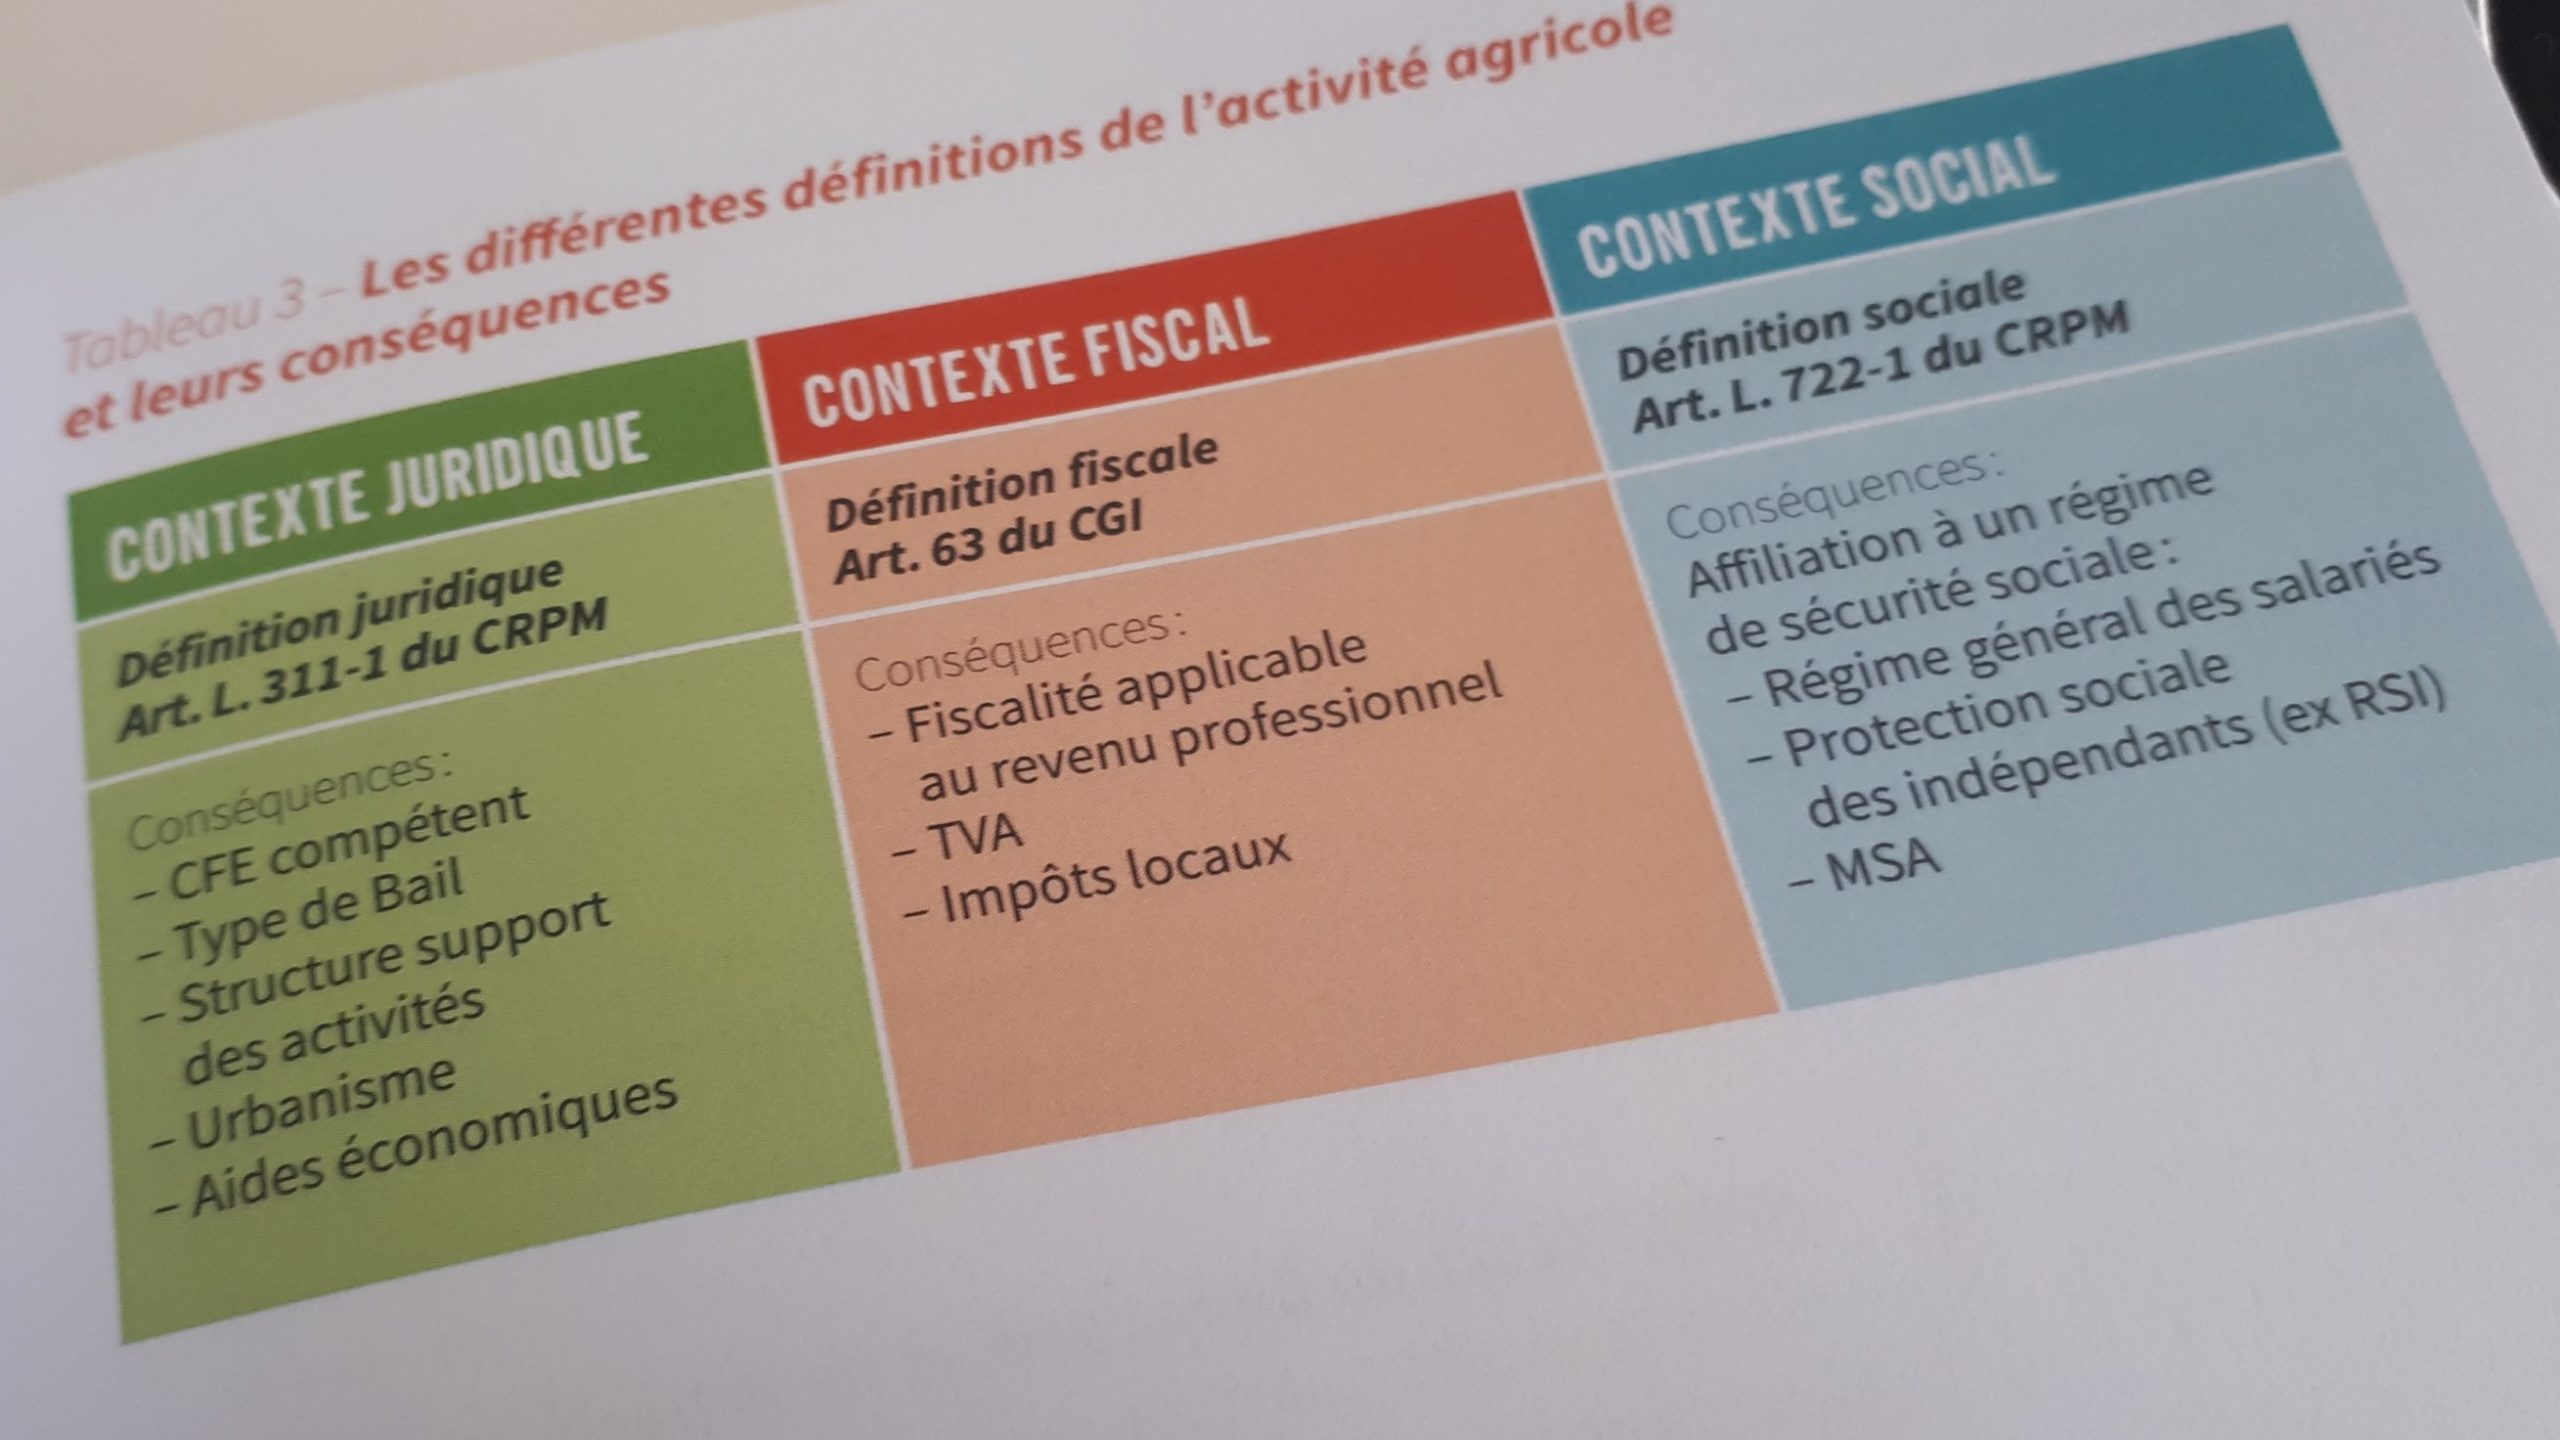 Les trois contextes de définition de l'activité agricole, dans le livre d'Amel Bounaceur